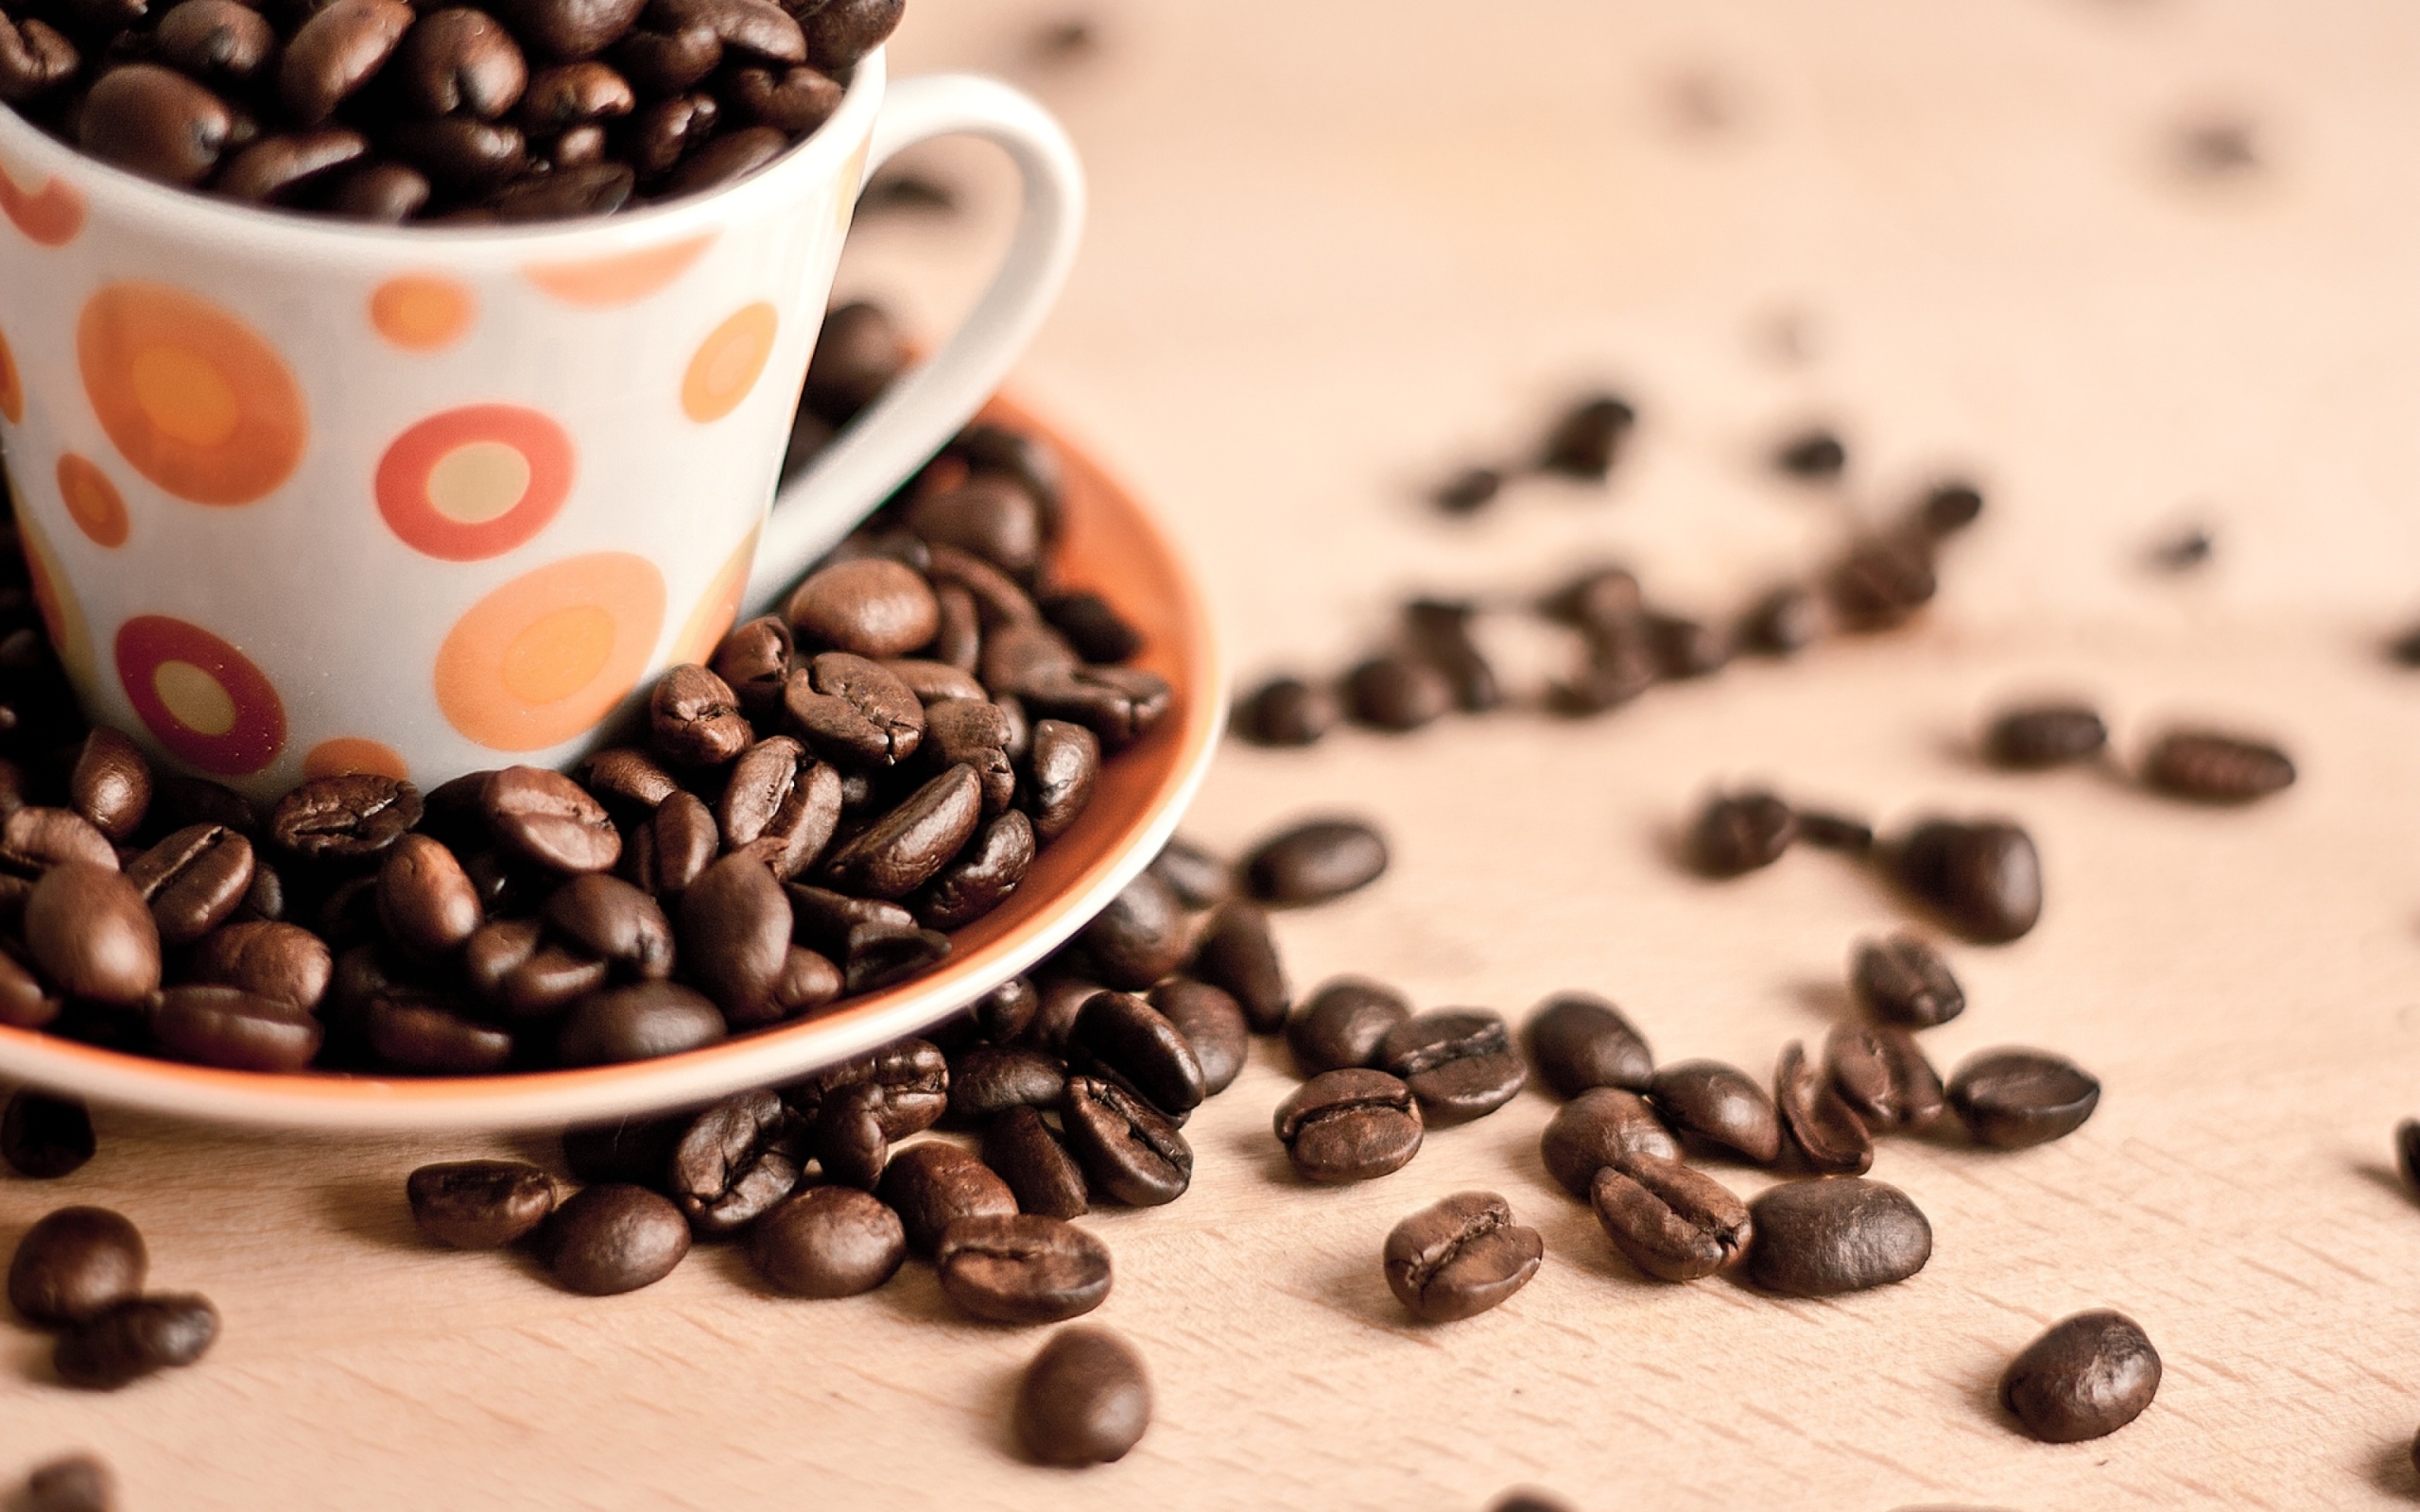 Das Coffee beans Wallpaper 2560x1600